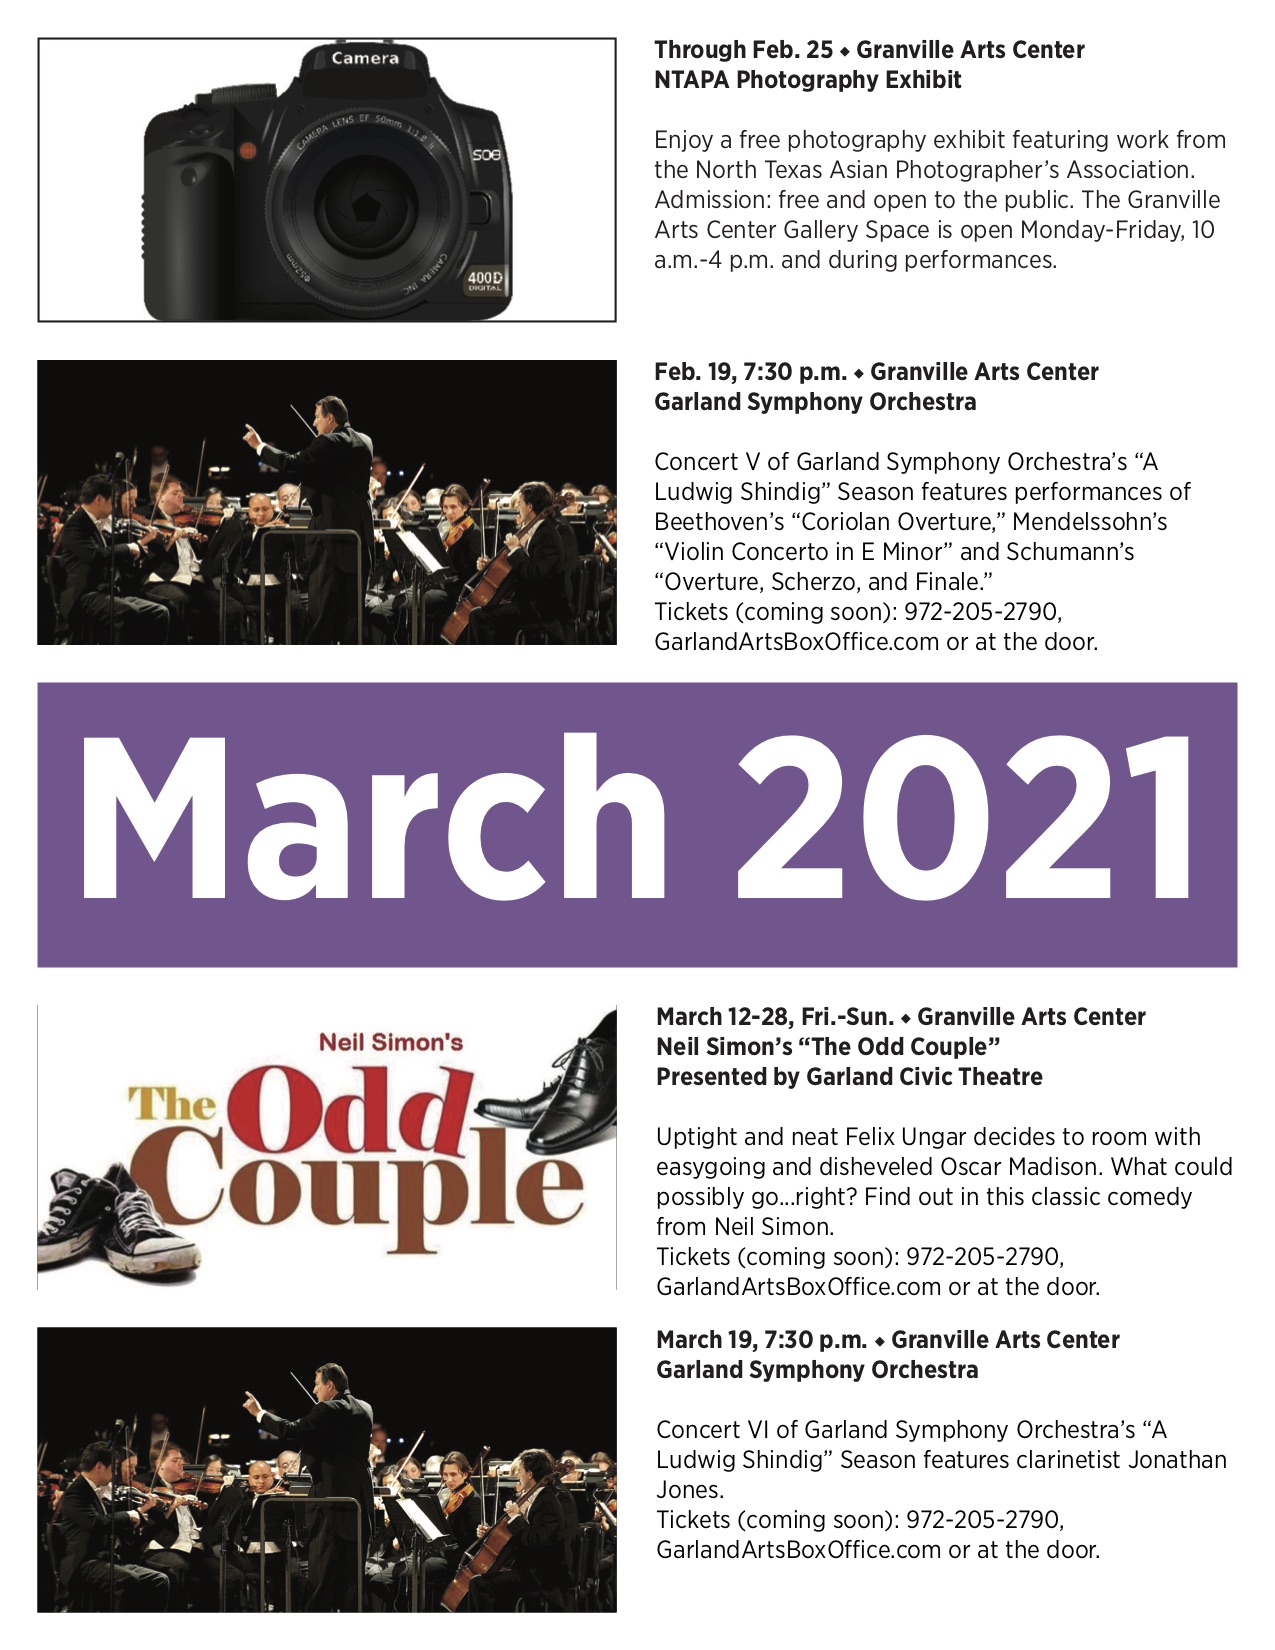 Granville Arts Center and Plaza Theatre Events Calendar The Garland